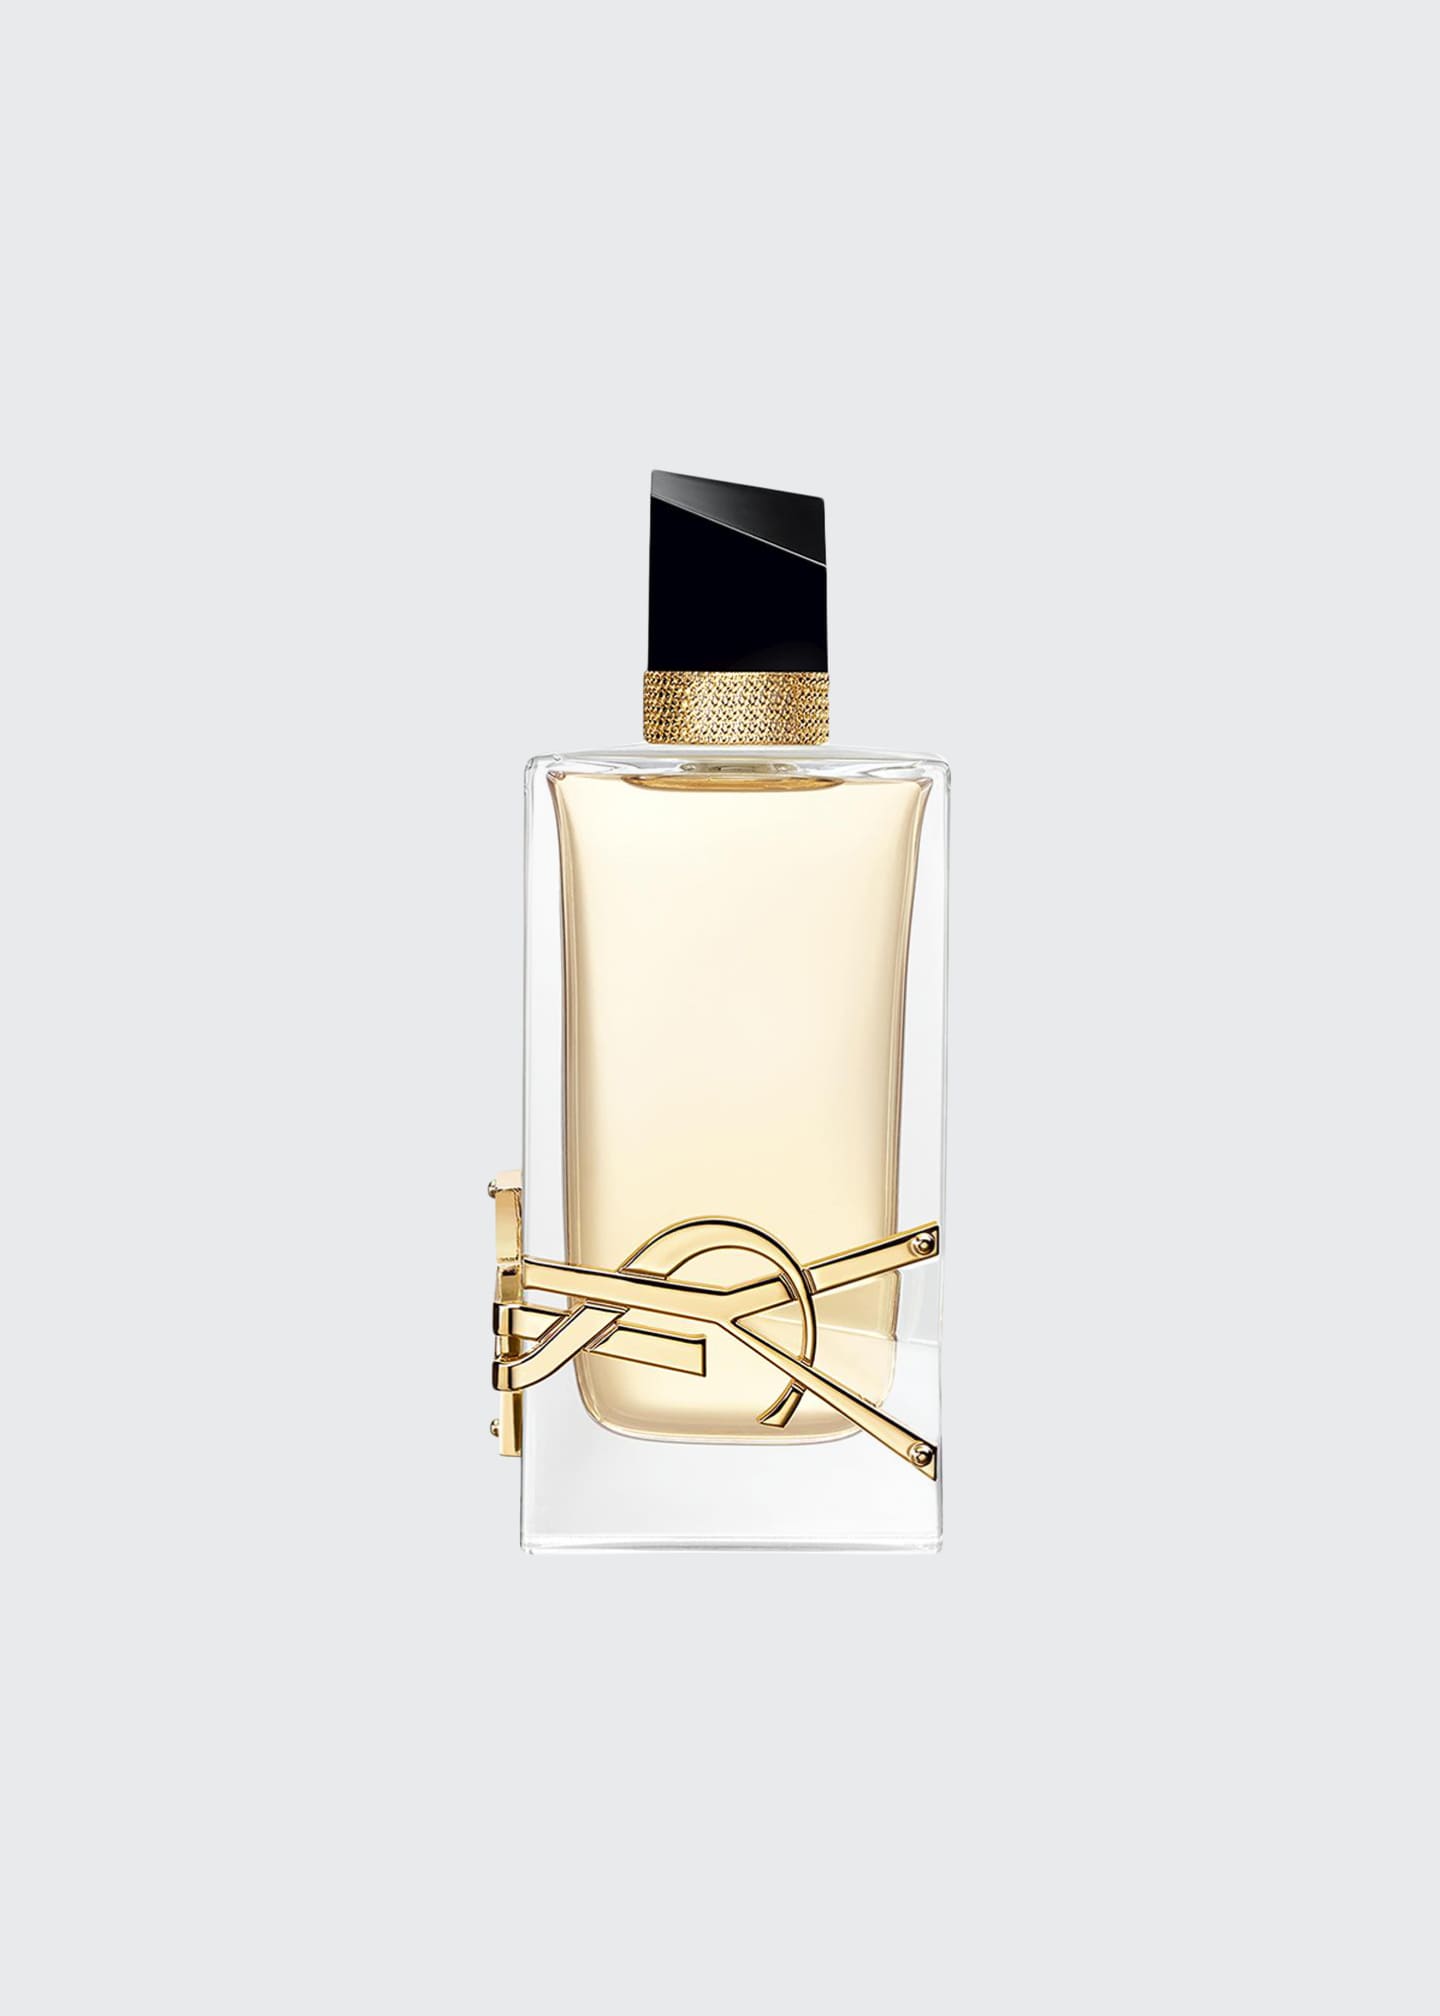 Yves Saint Laurent Beaute LIBRE Eau de Parfum